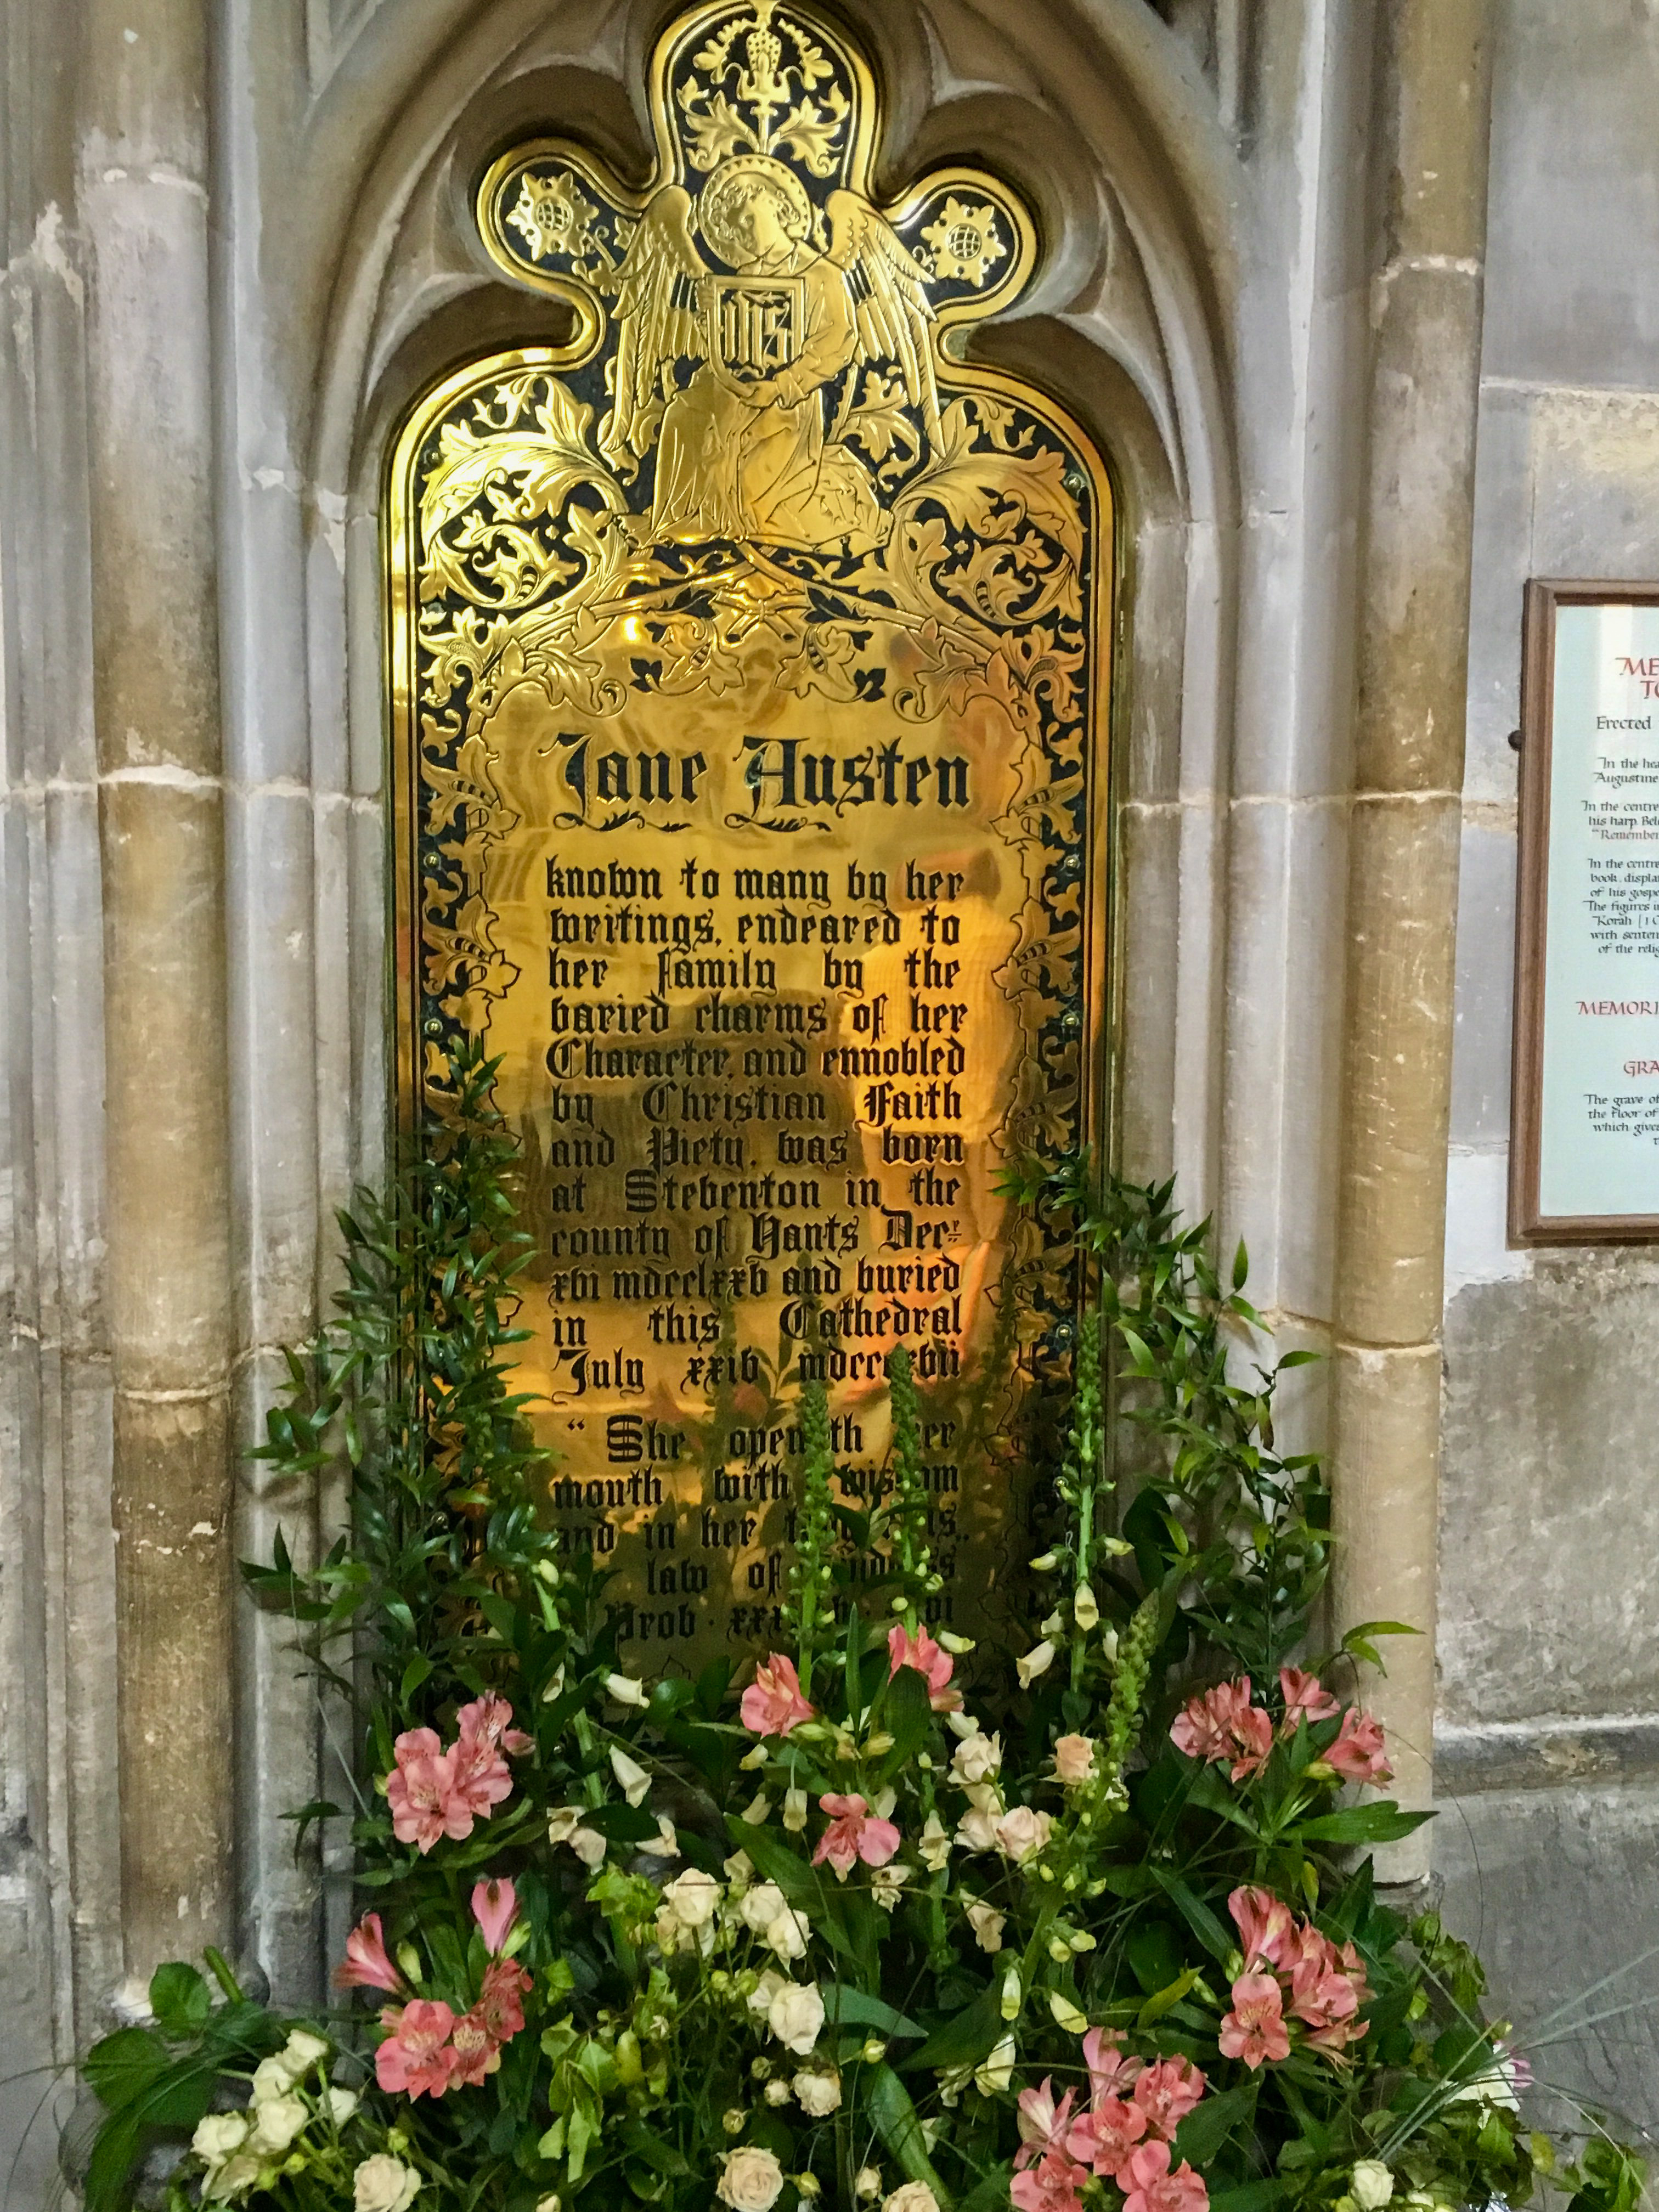 Jane Austen Grave